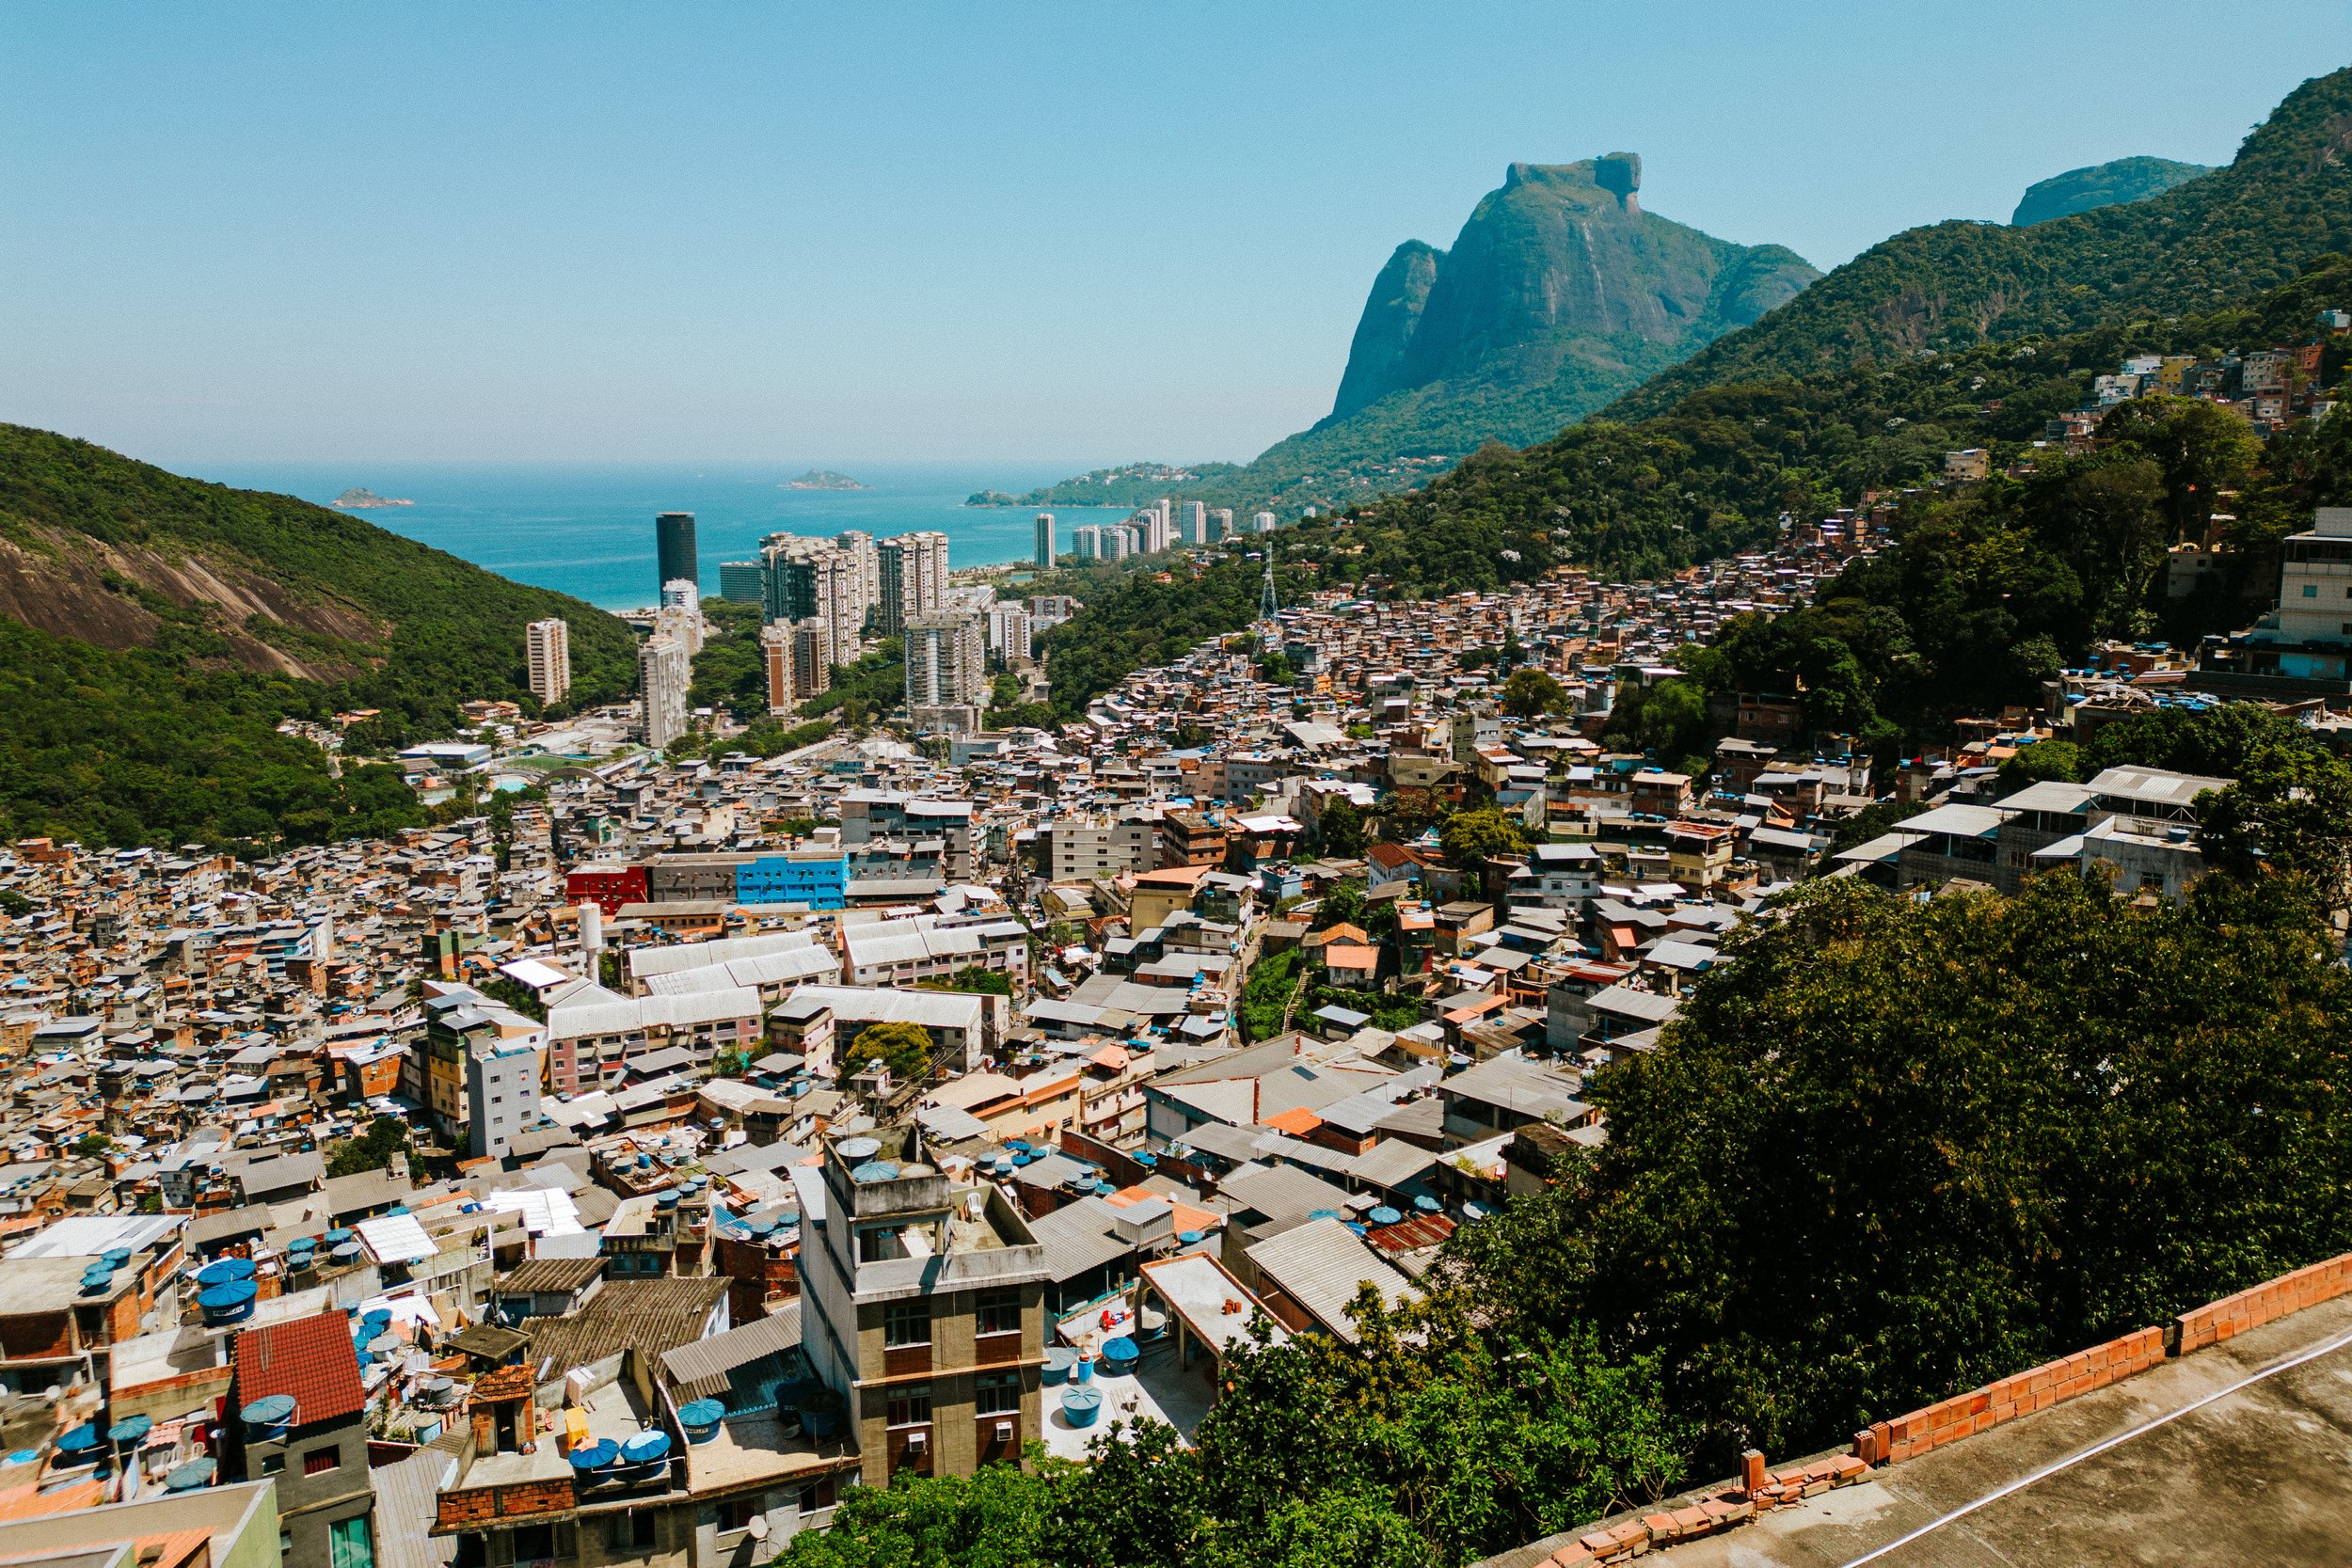 favela-da-rocinha-rio-de-janeiro-guia-turistico-para-favela-ricardo-franzen-producao-de-filme-documentario-educacao-na-favela-rio-de-janeiro-rocinha-3.jpg